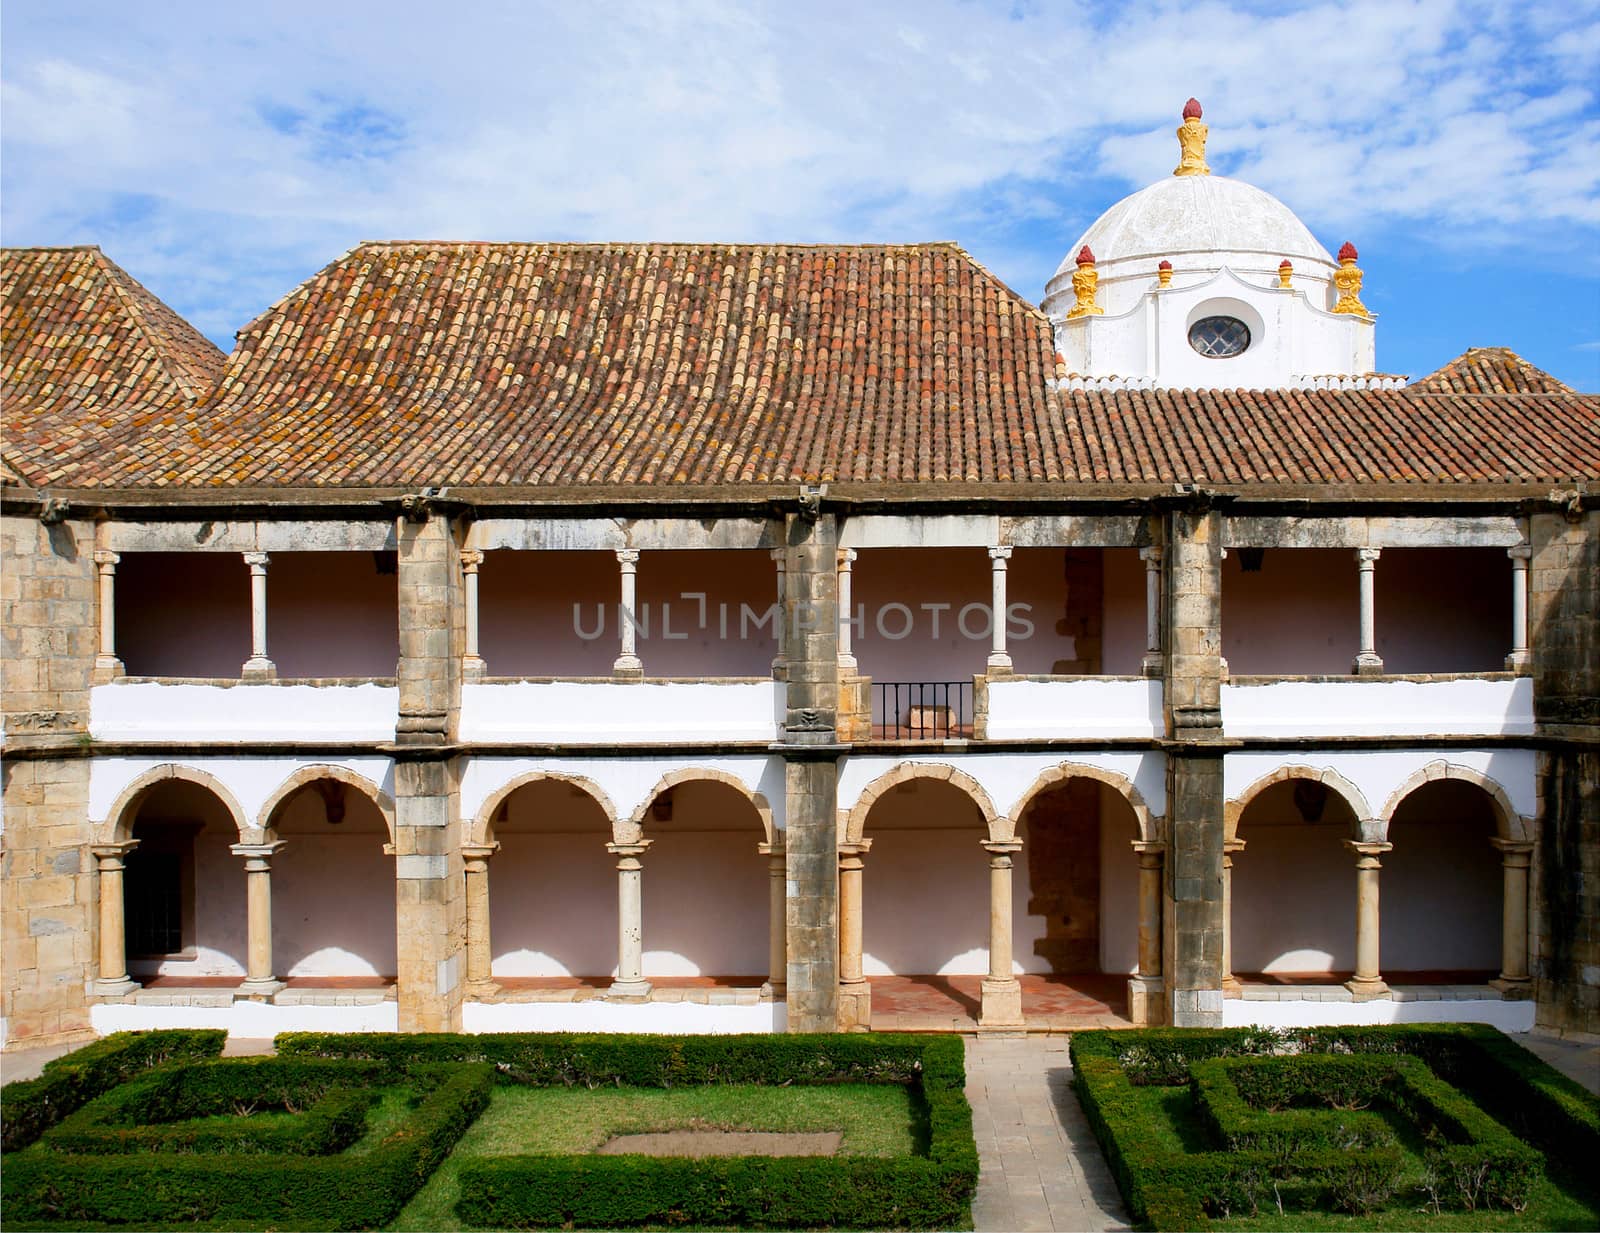 Convento Nossa Senhora da Assumpçao by ptxgarfield